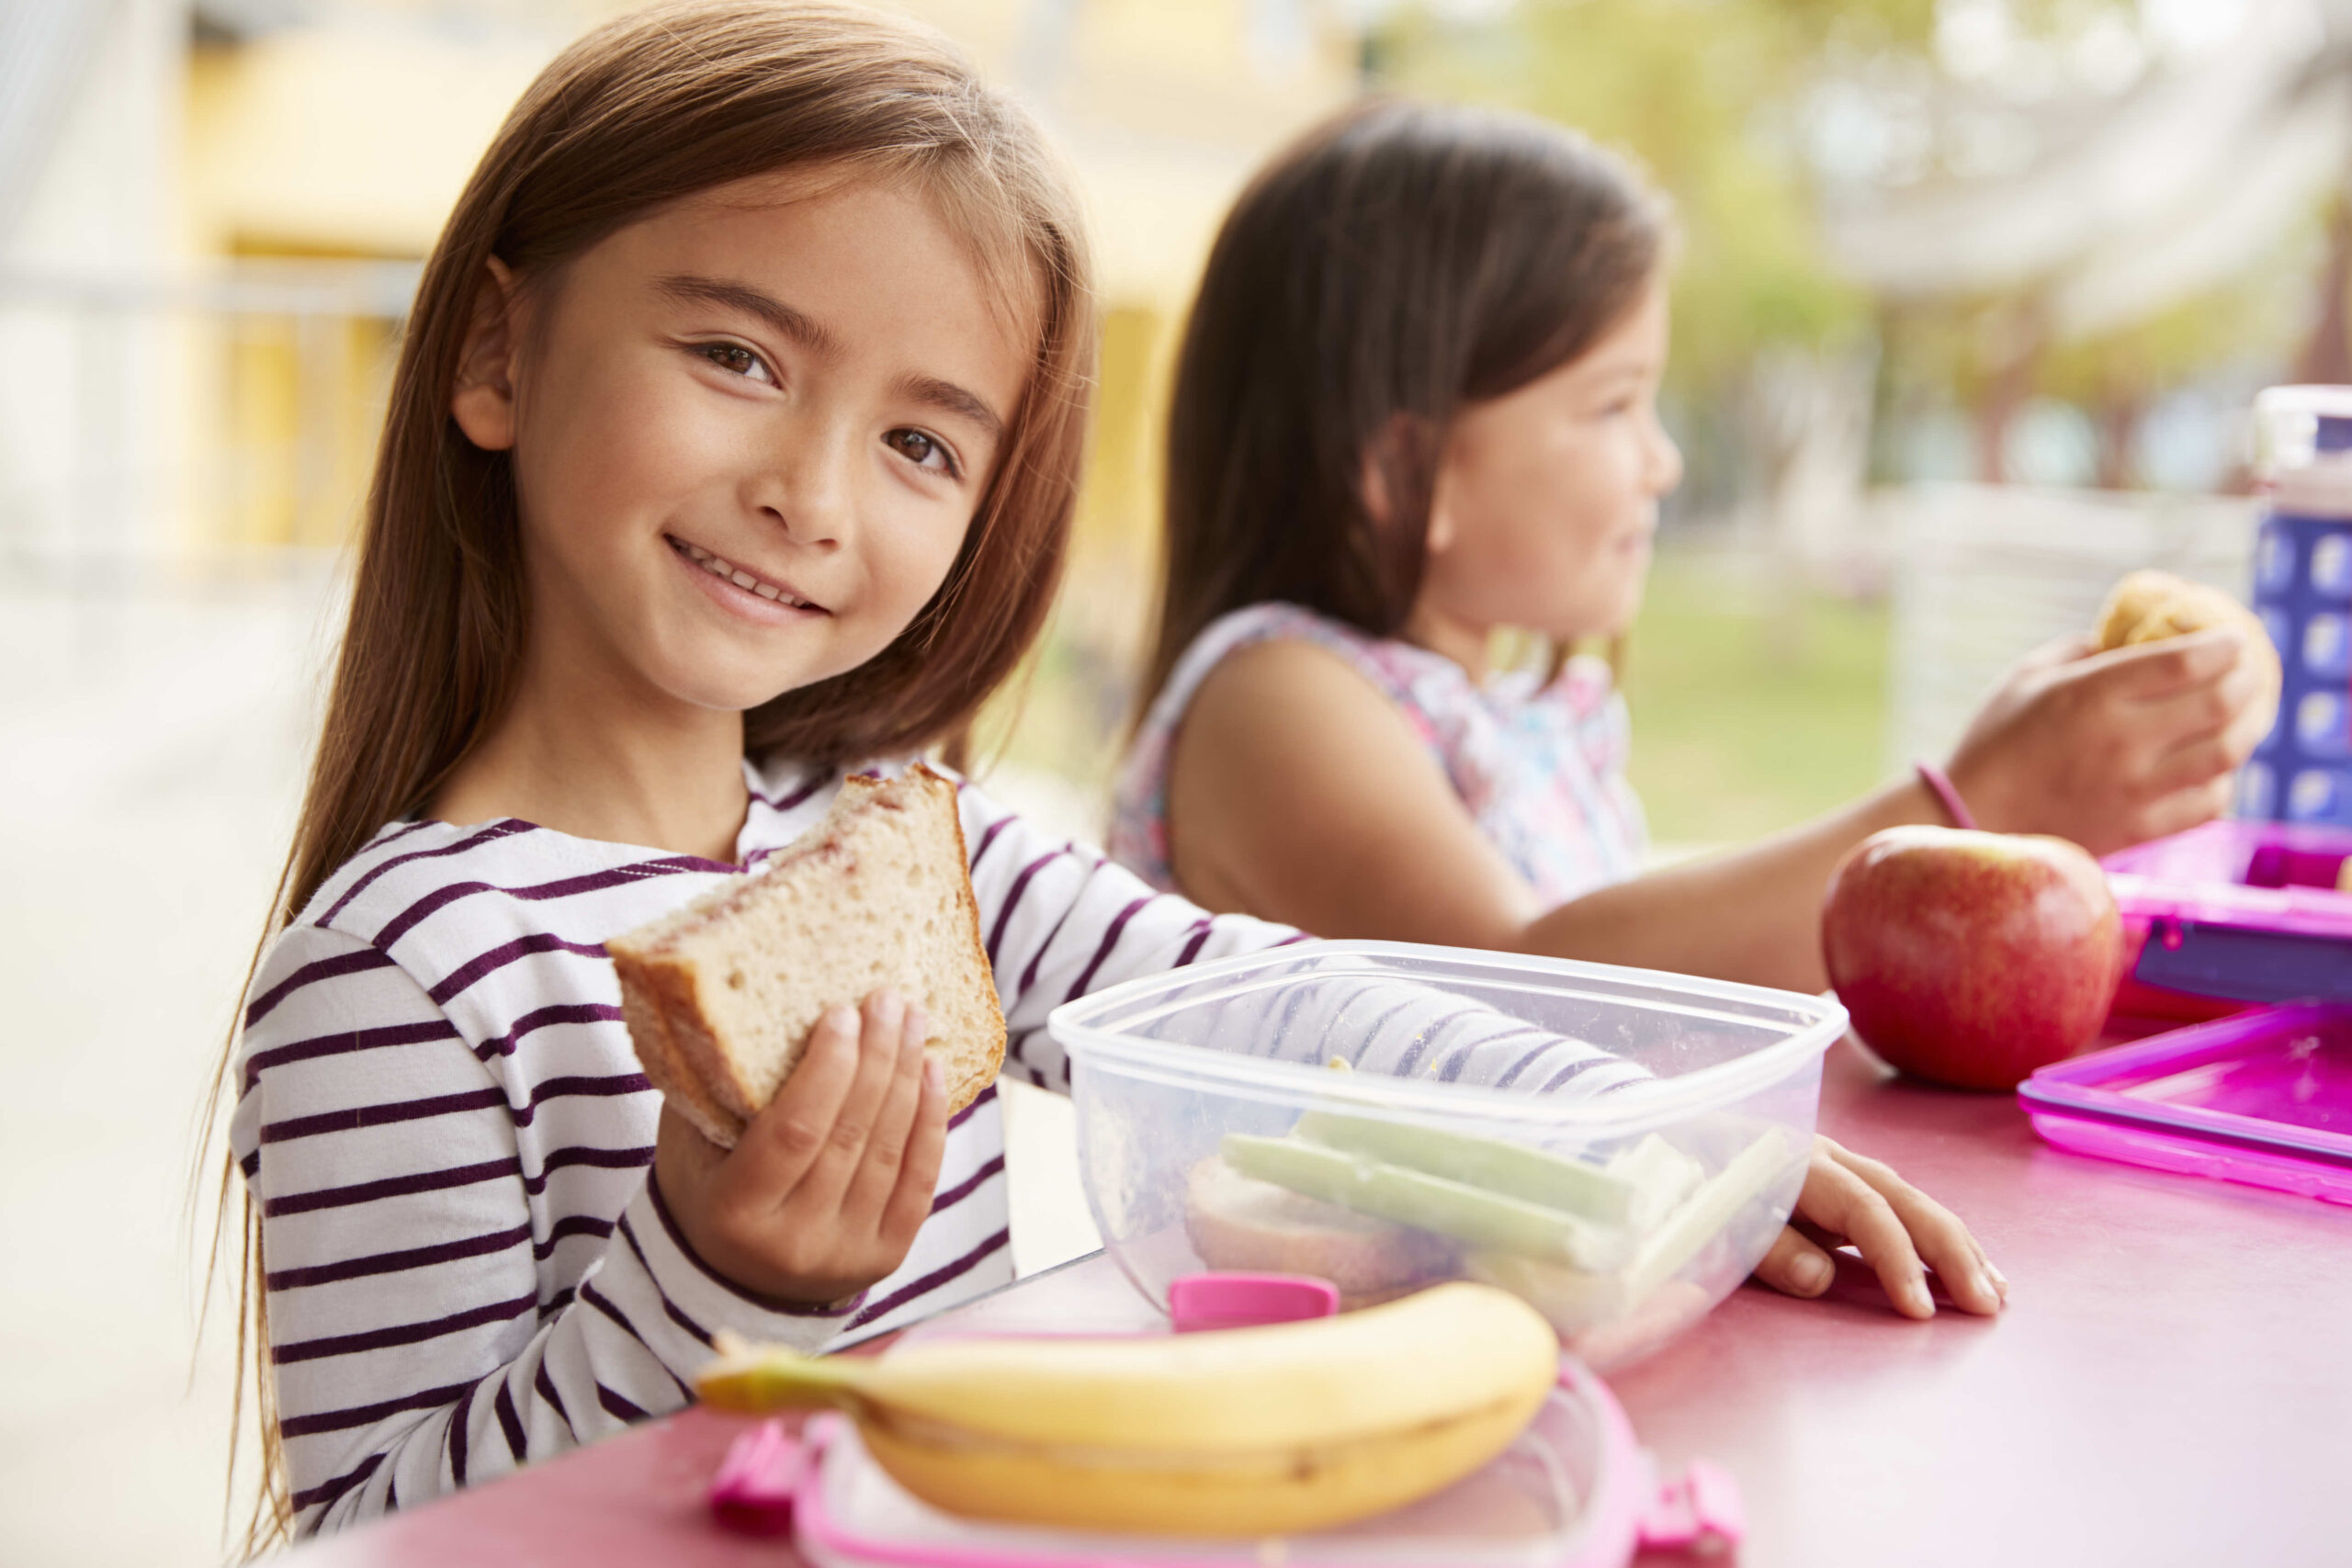 هل يسبب نقص تغذية الأطفال قصرا في القامة؟ وما تأثيره على السمنة في الأطفال؟ - دراسة  